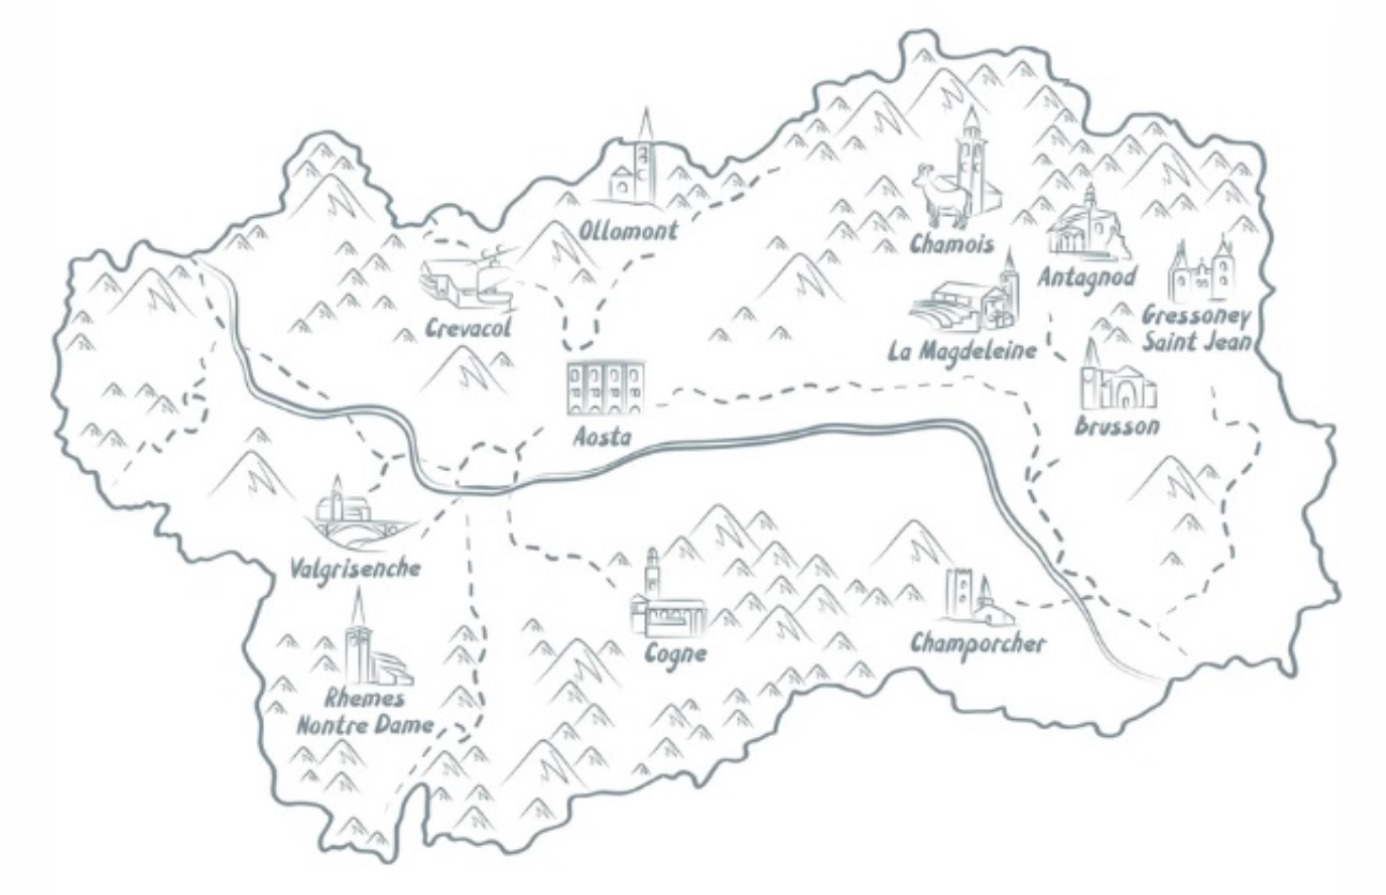 Magic Skipass Valle d’Aosta, Magic Skipass Vallée d’Aoste (fonte/source: https://magic-skipass.skilife.ski)